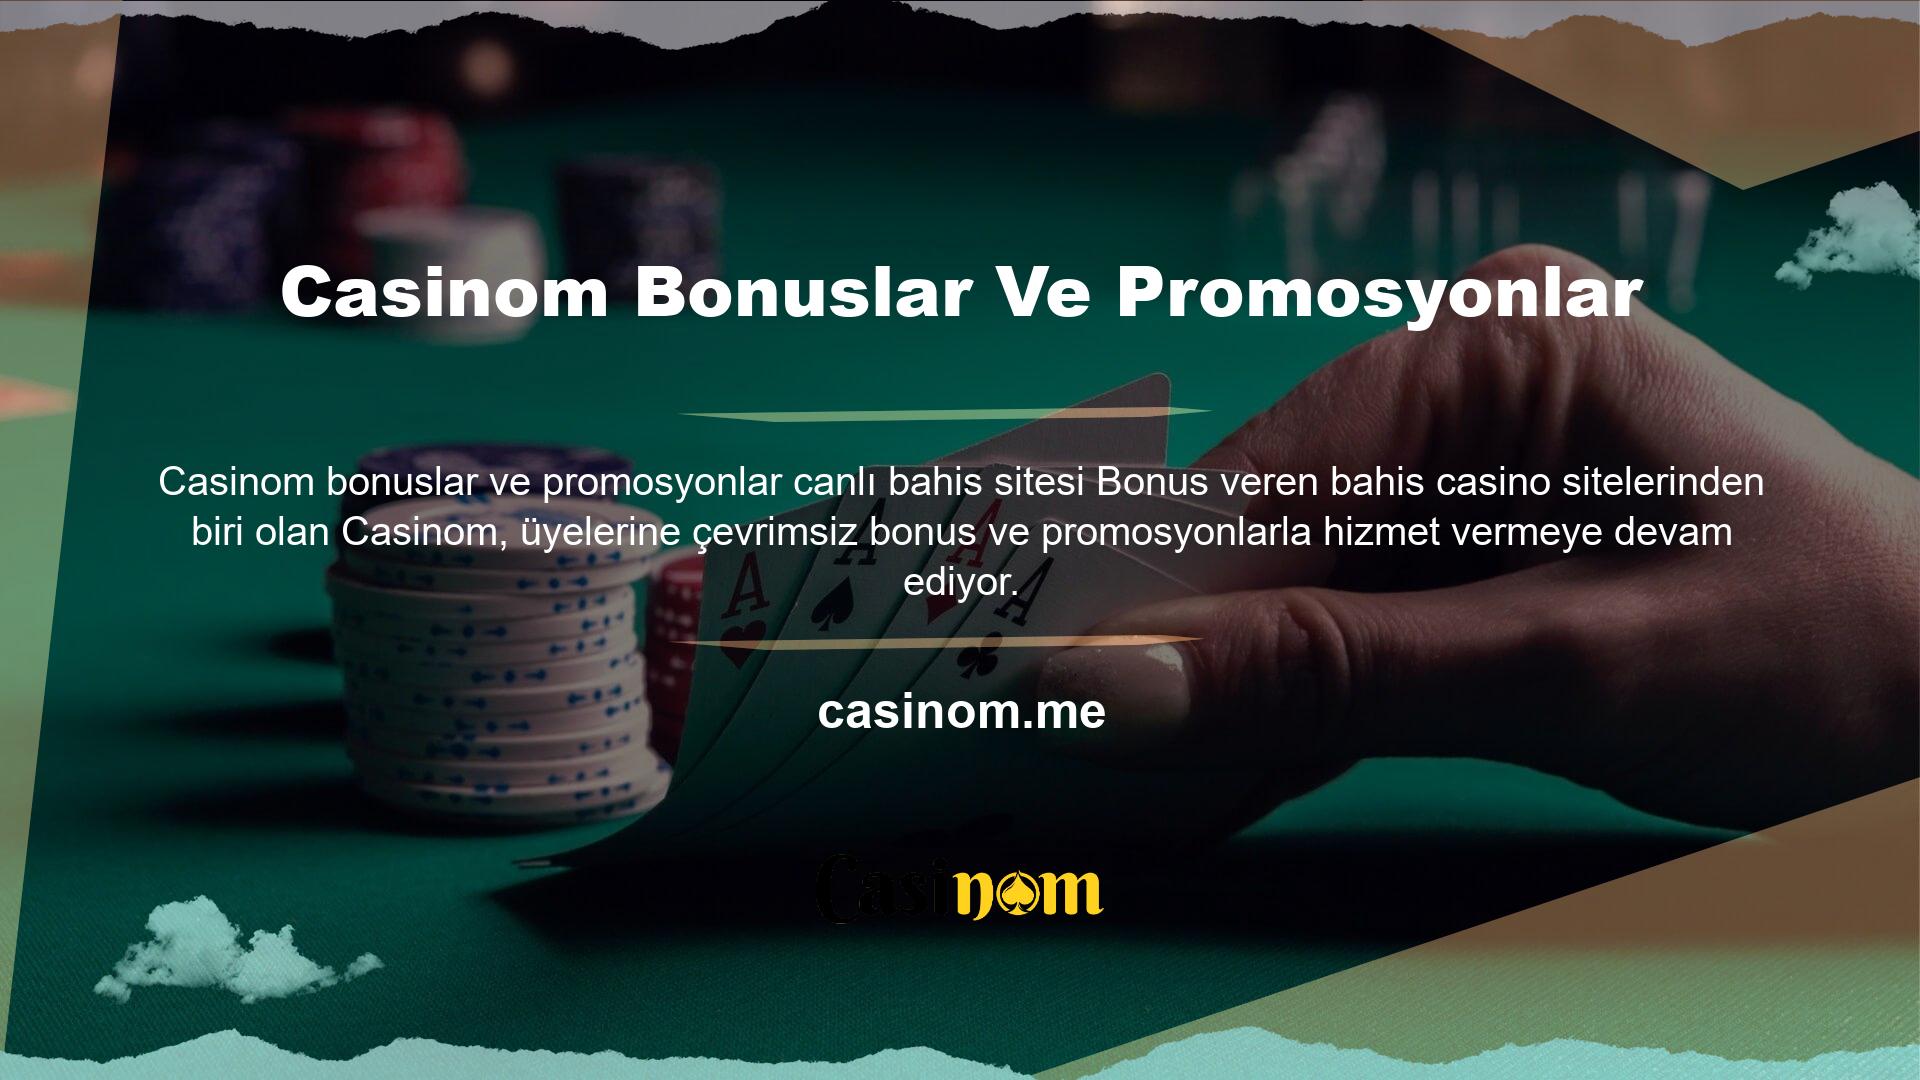 Casinom bonus ve promosyonlarından yararlanmak için, Casinom üyesi olduktan sonra hesabınıza para yatırmanız yeterlidir